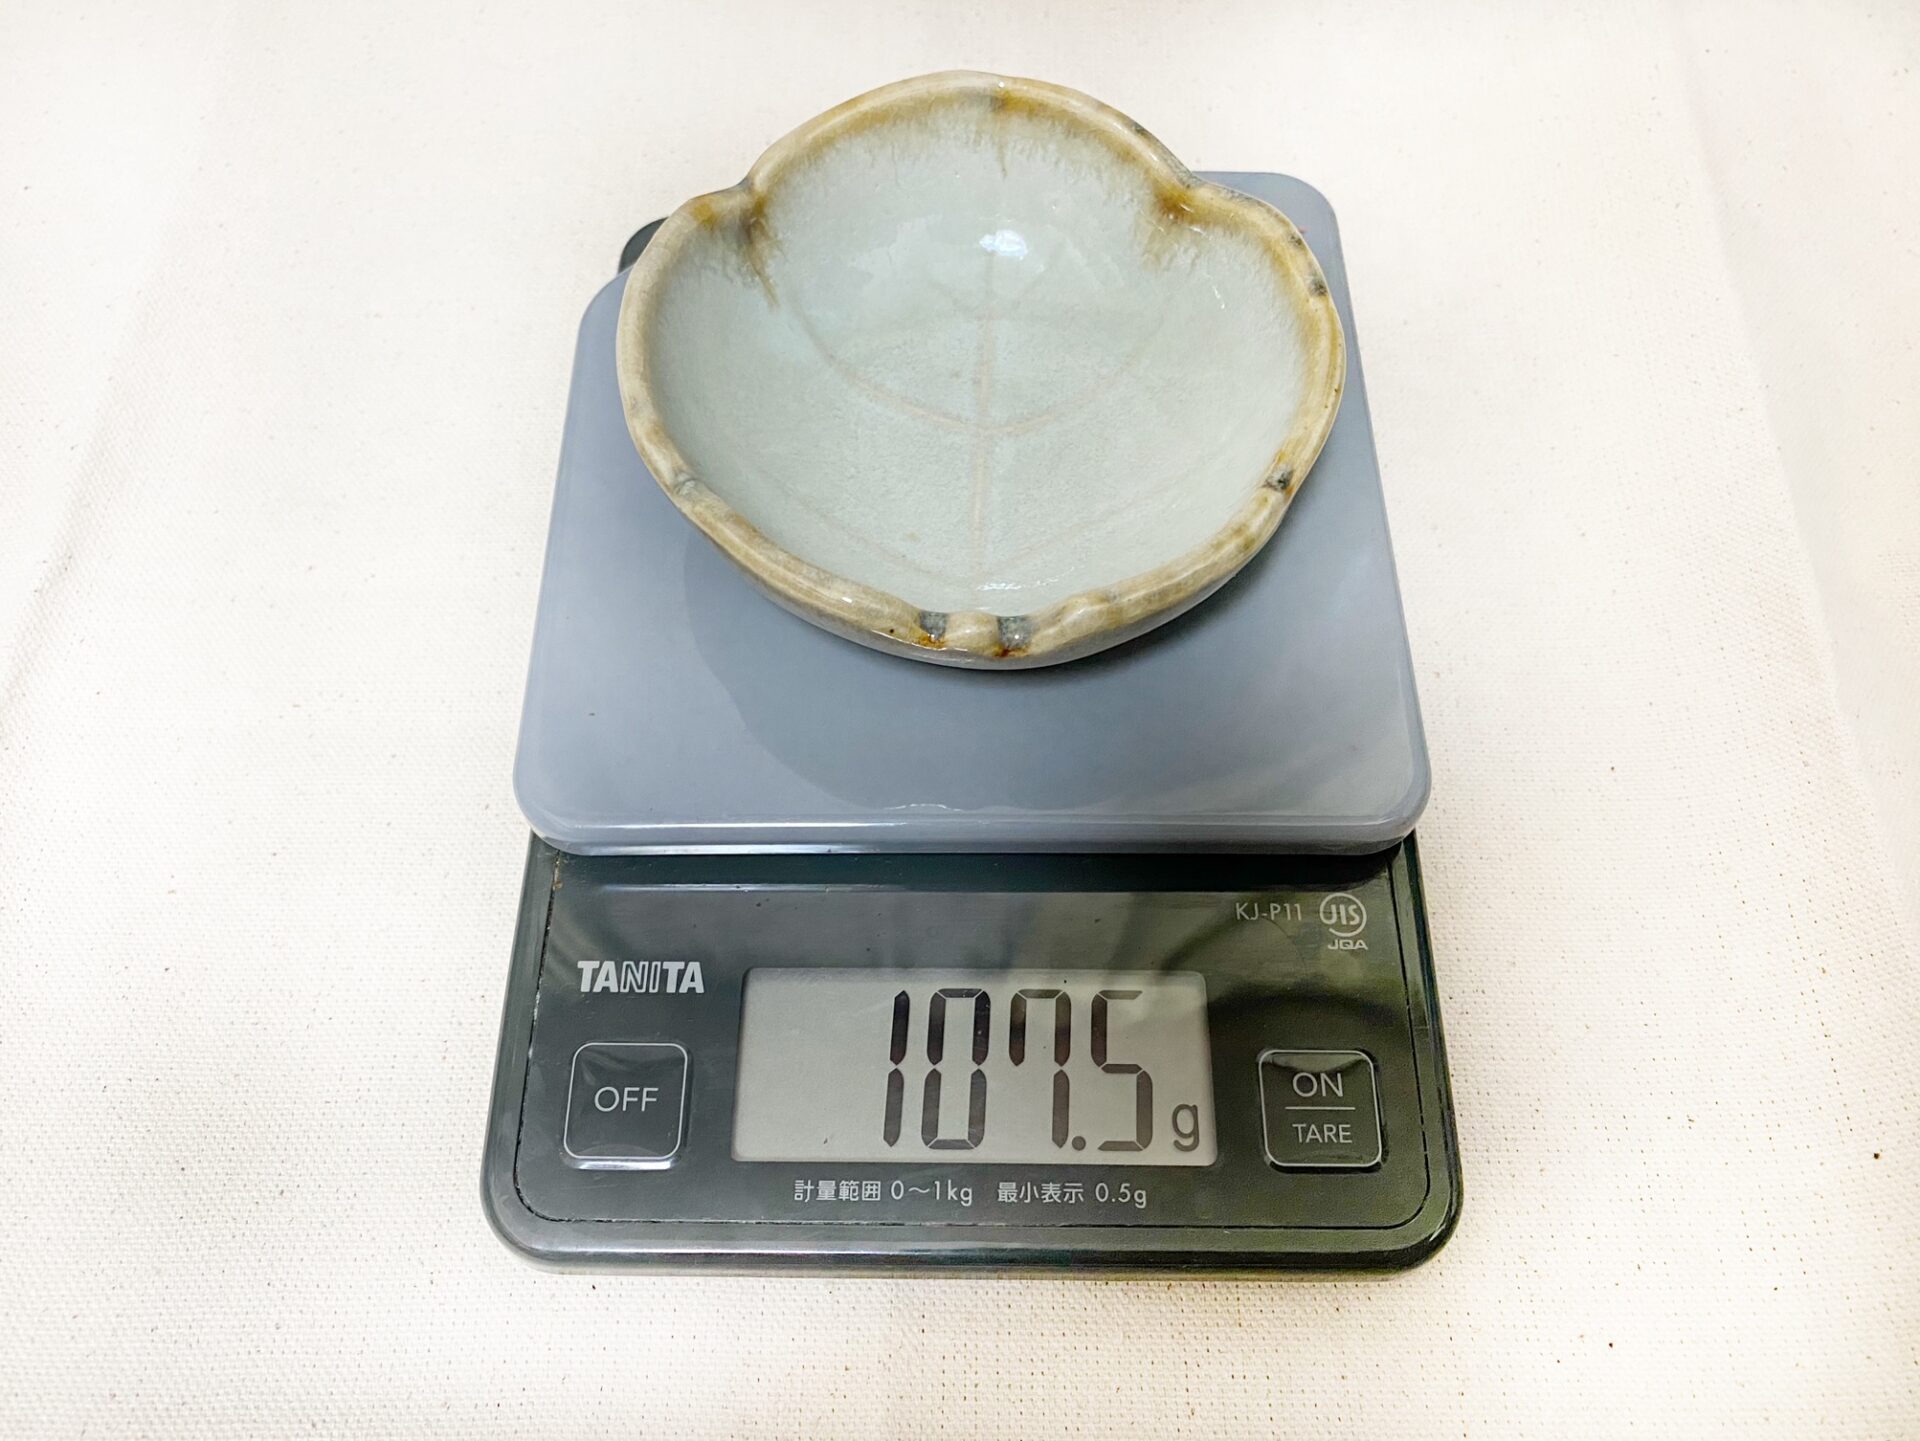 クッキングスケールの計量皿に小さいお皿をのせた写真。１０７.５グラムと表示されています